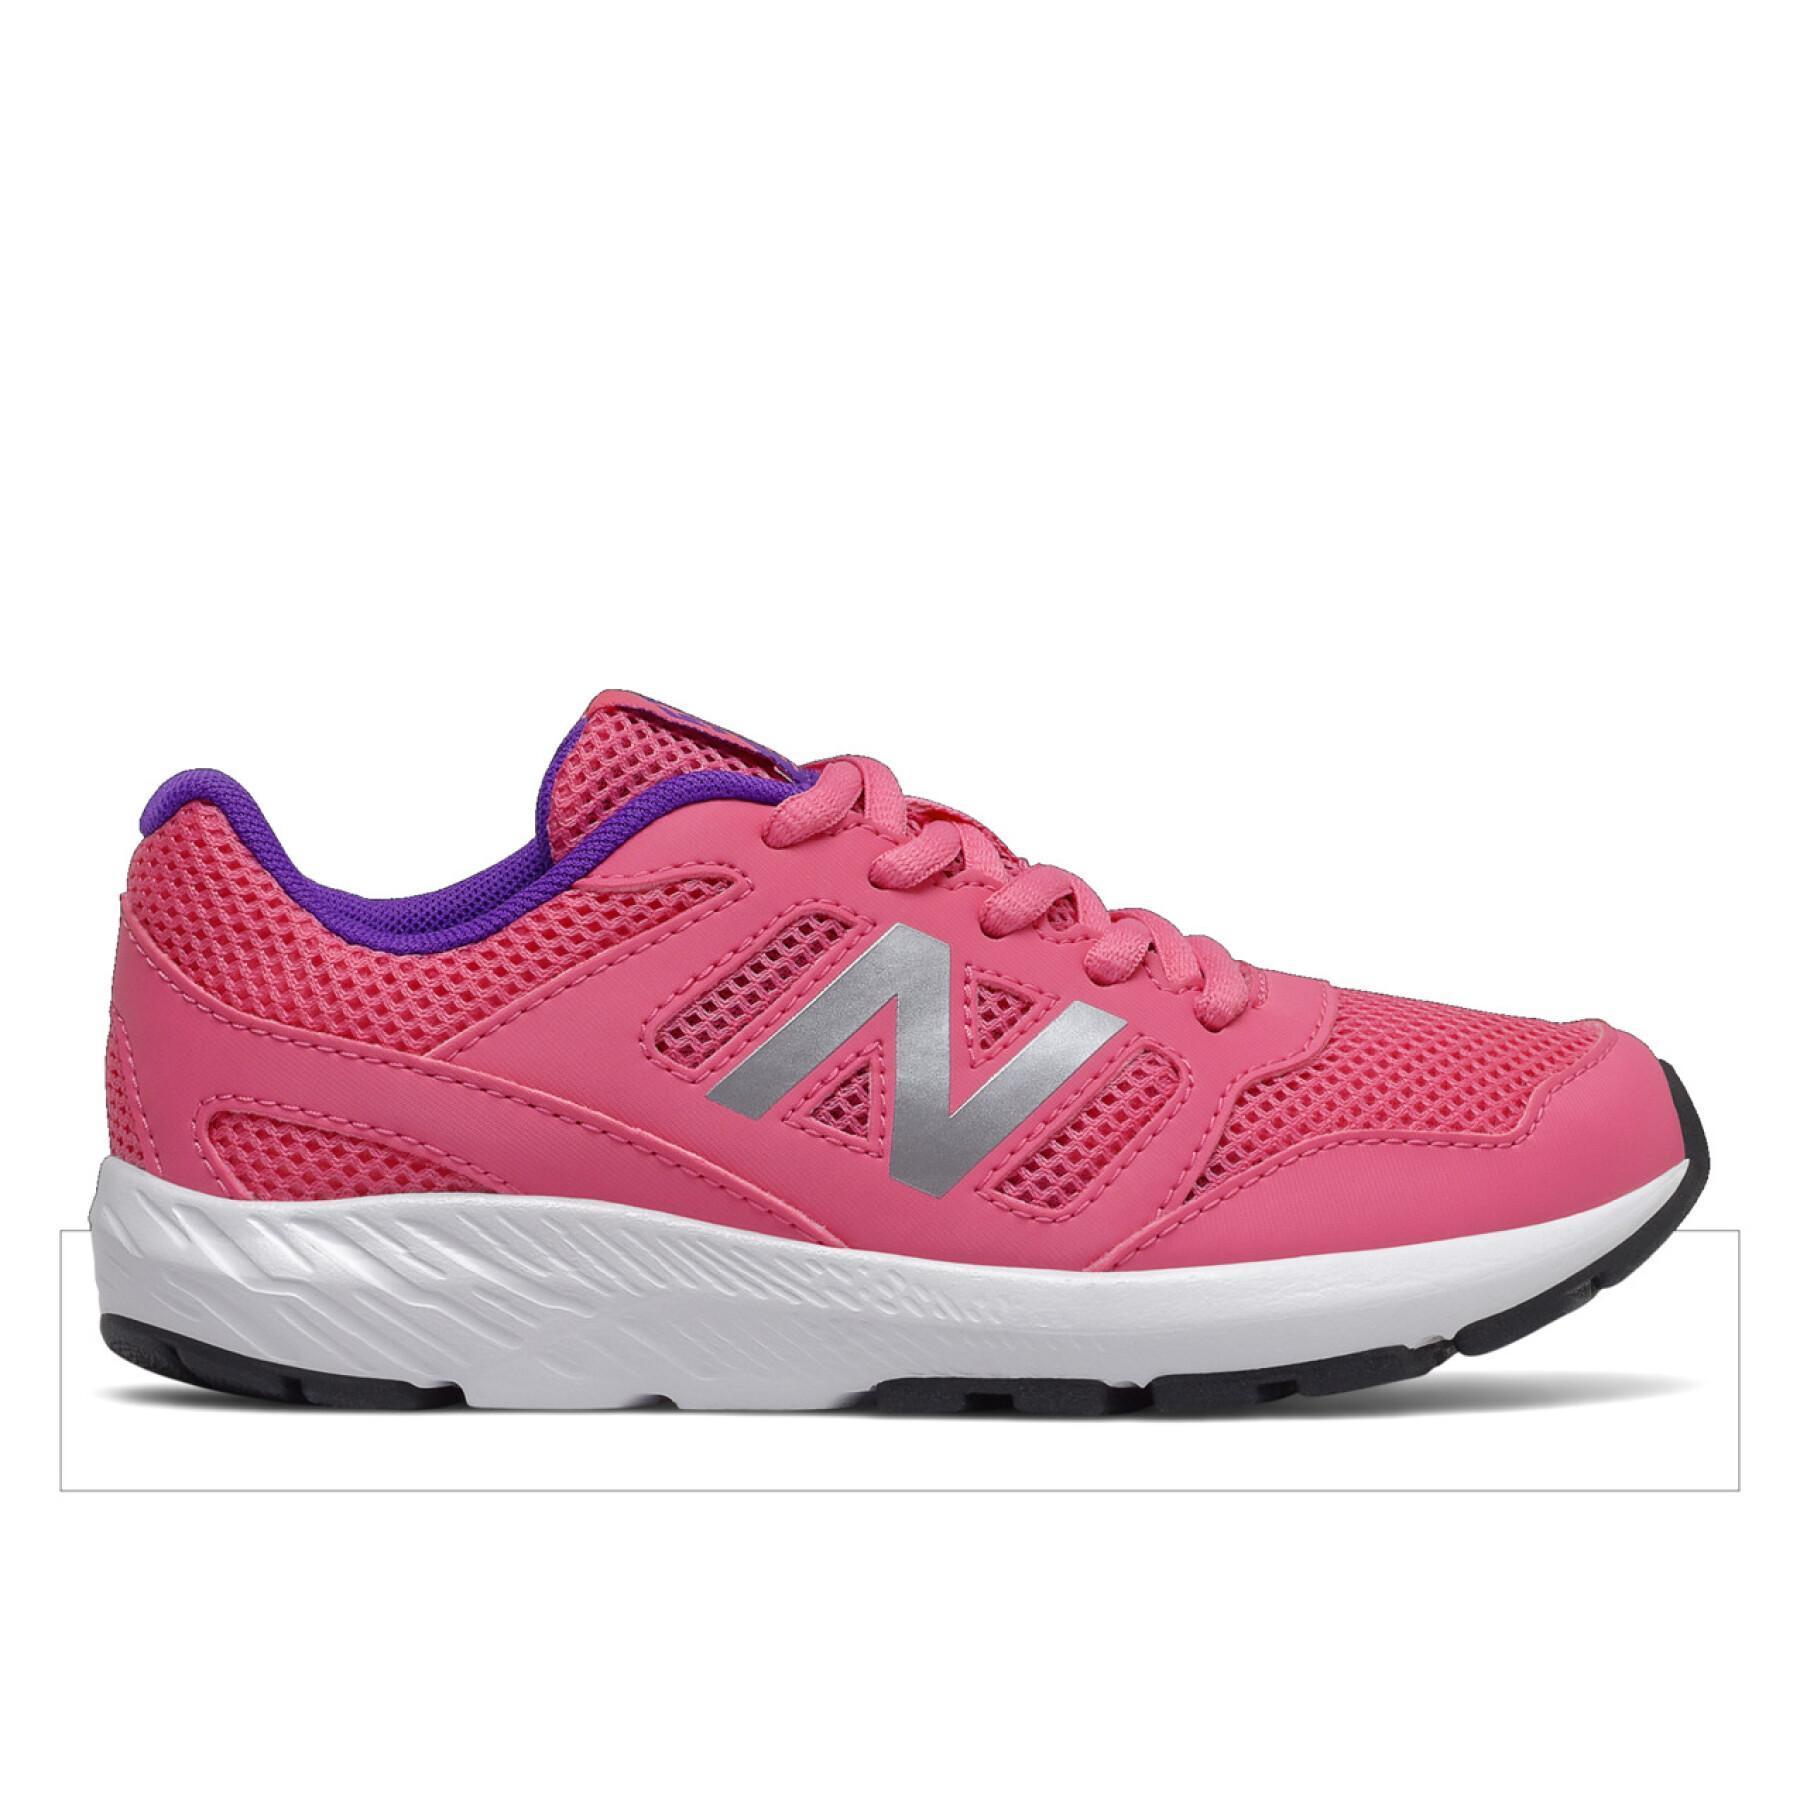 Schuhe für Mädchen New Balance 570